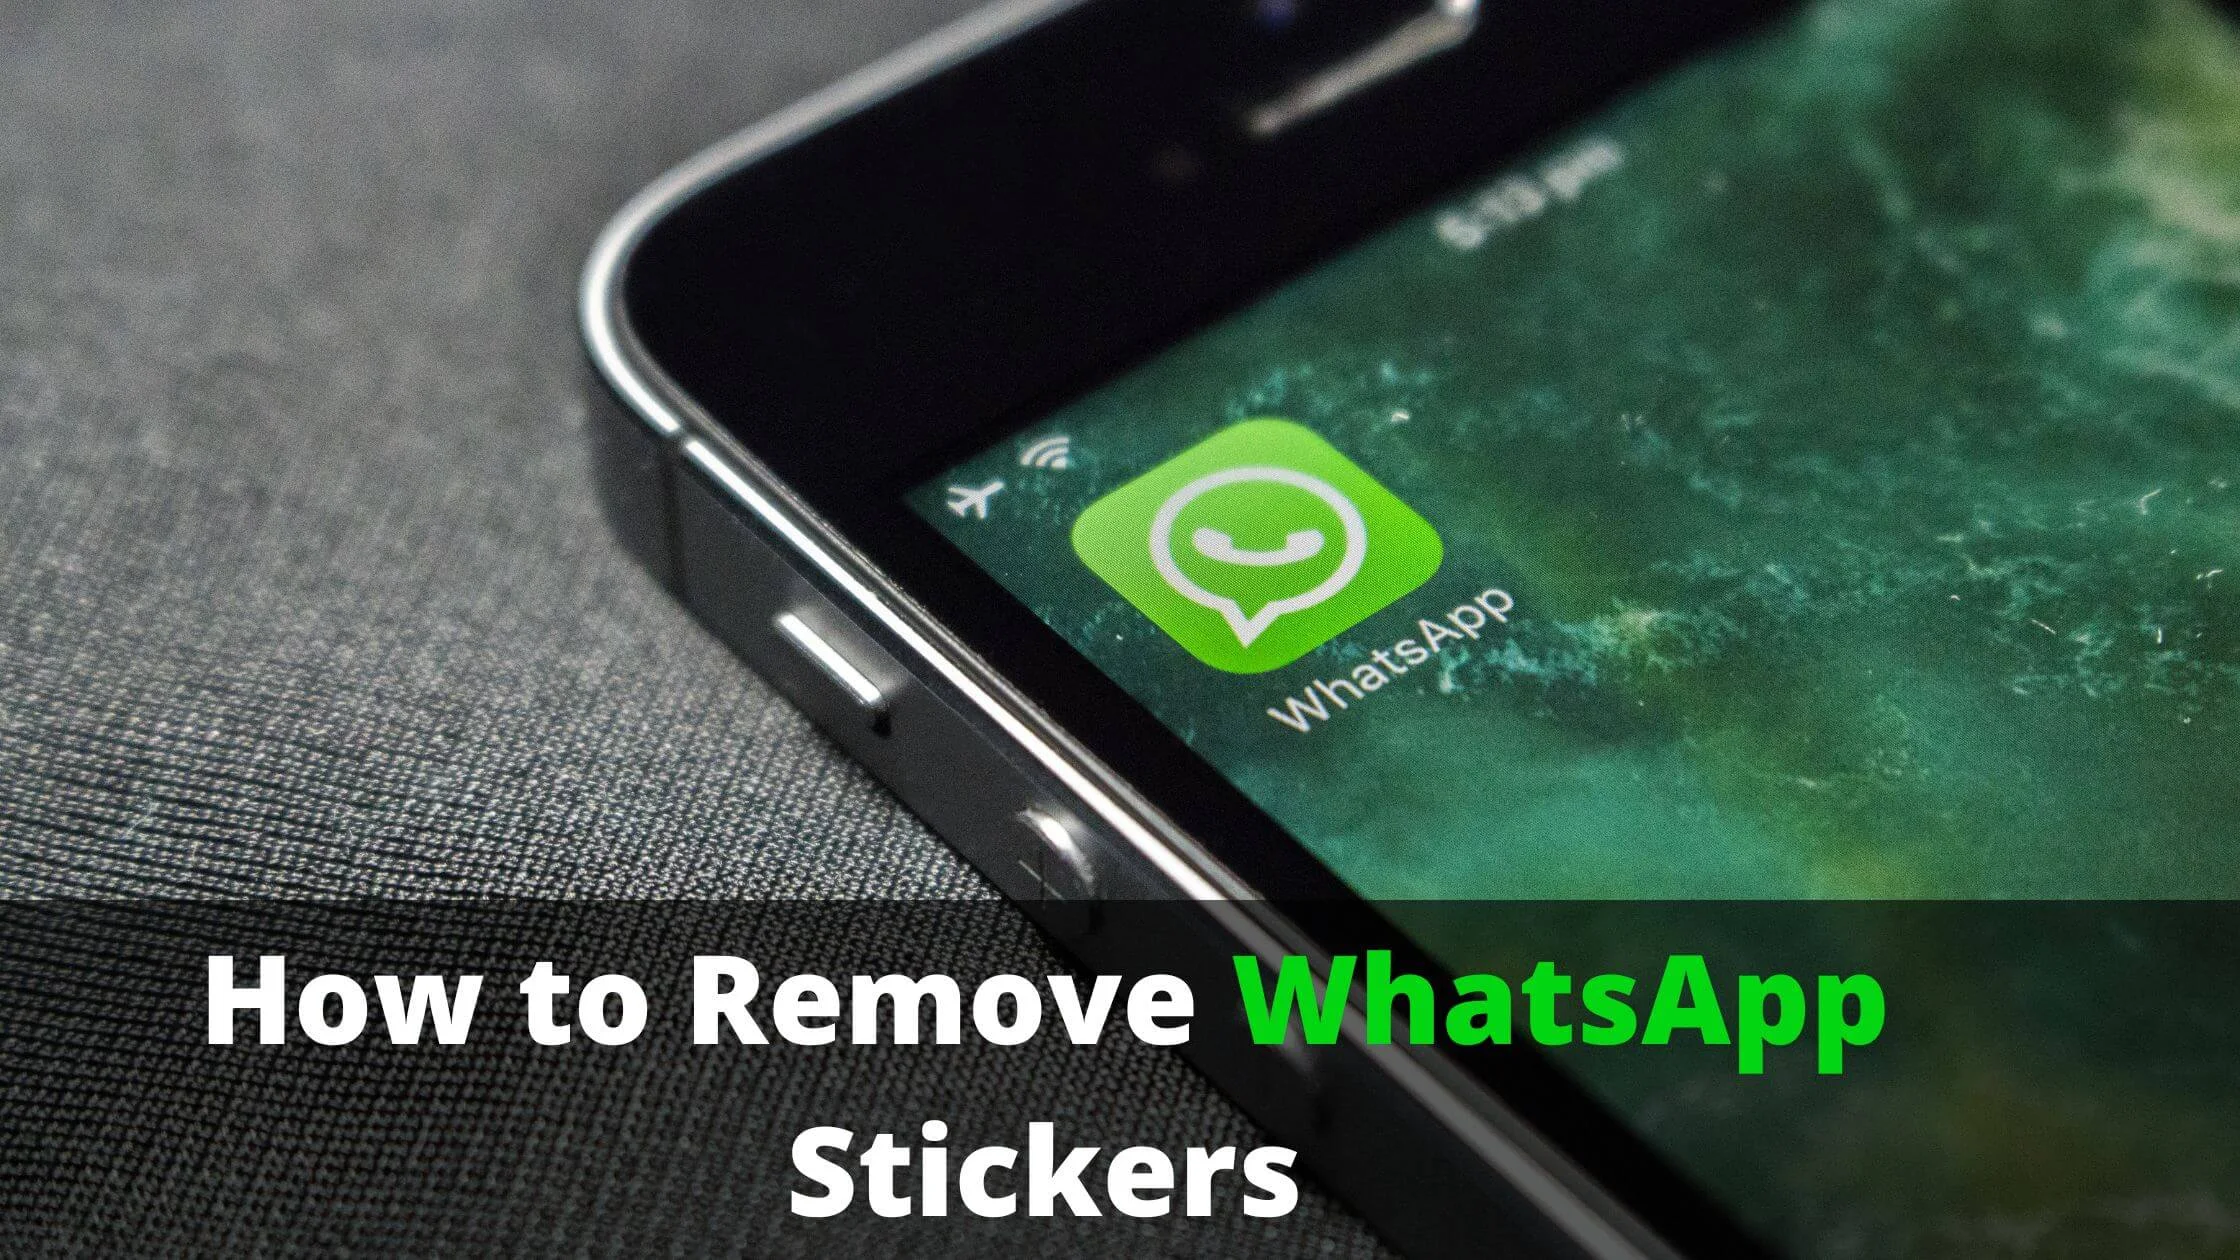 Remove WhatsApp Stickers